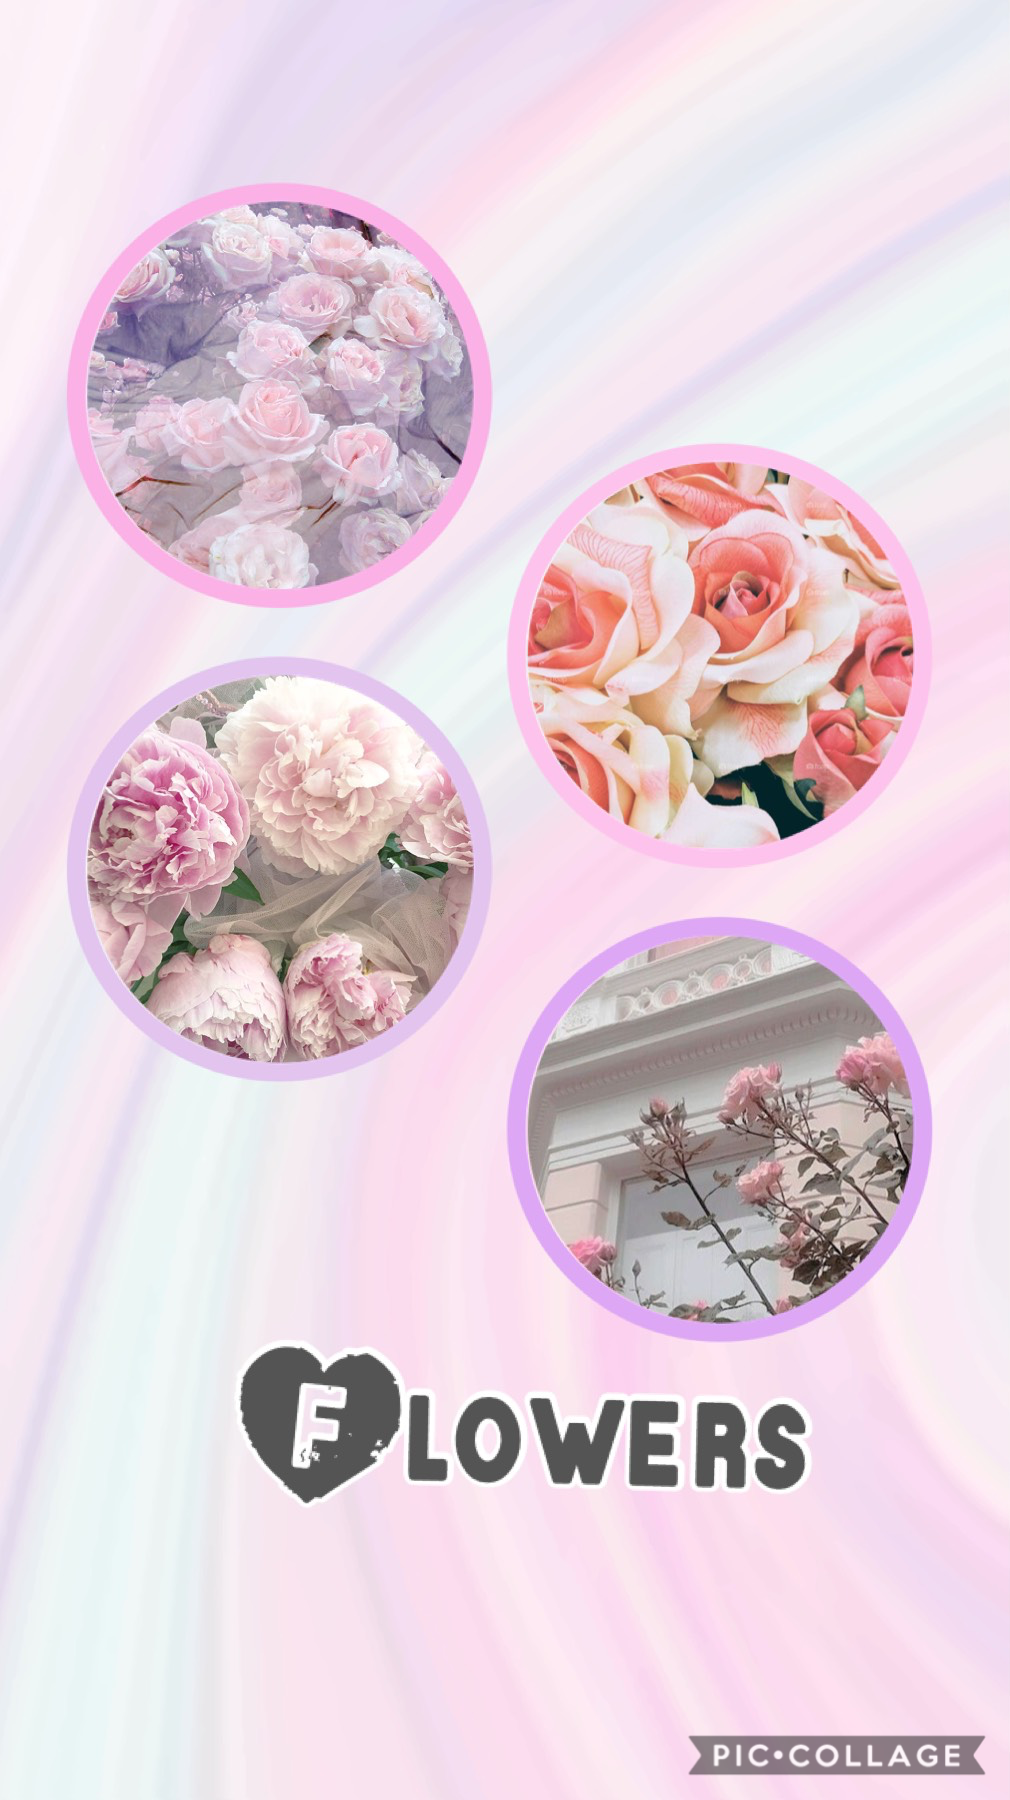 #pastel
#flowers 
#pinkpurpleblue 